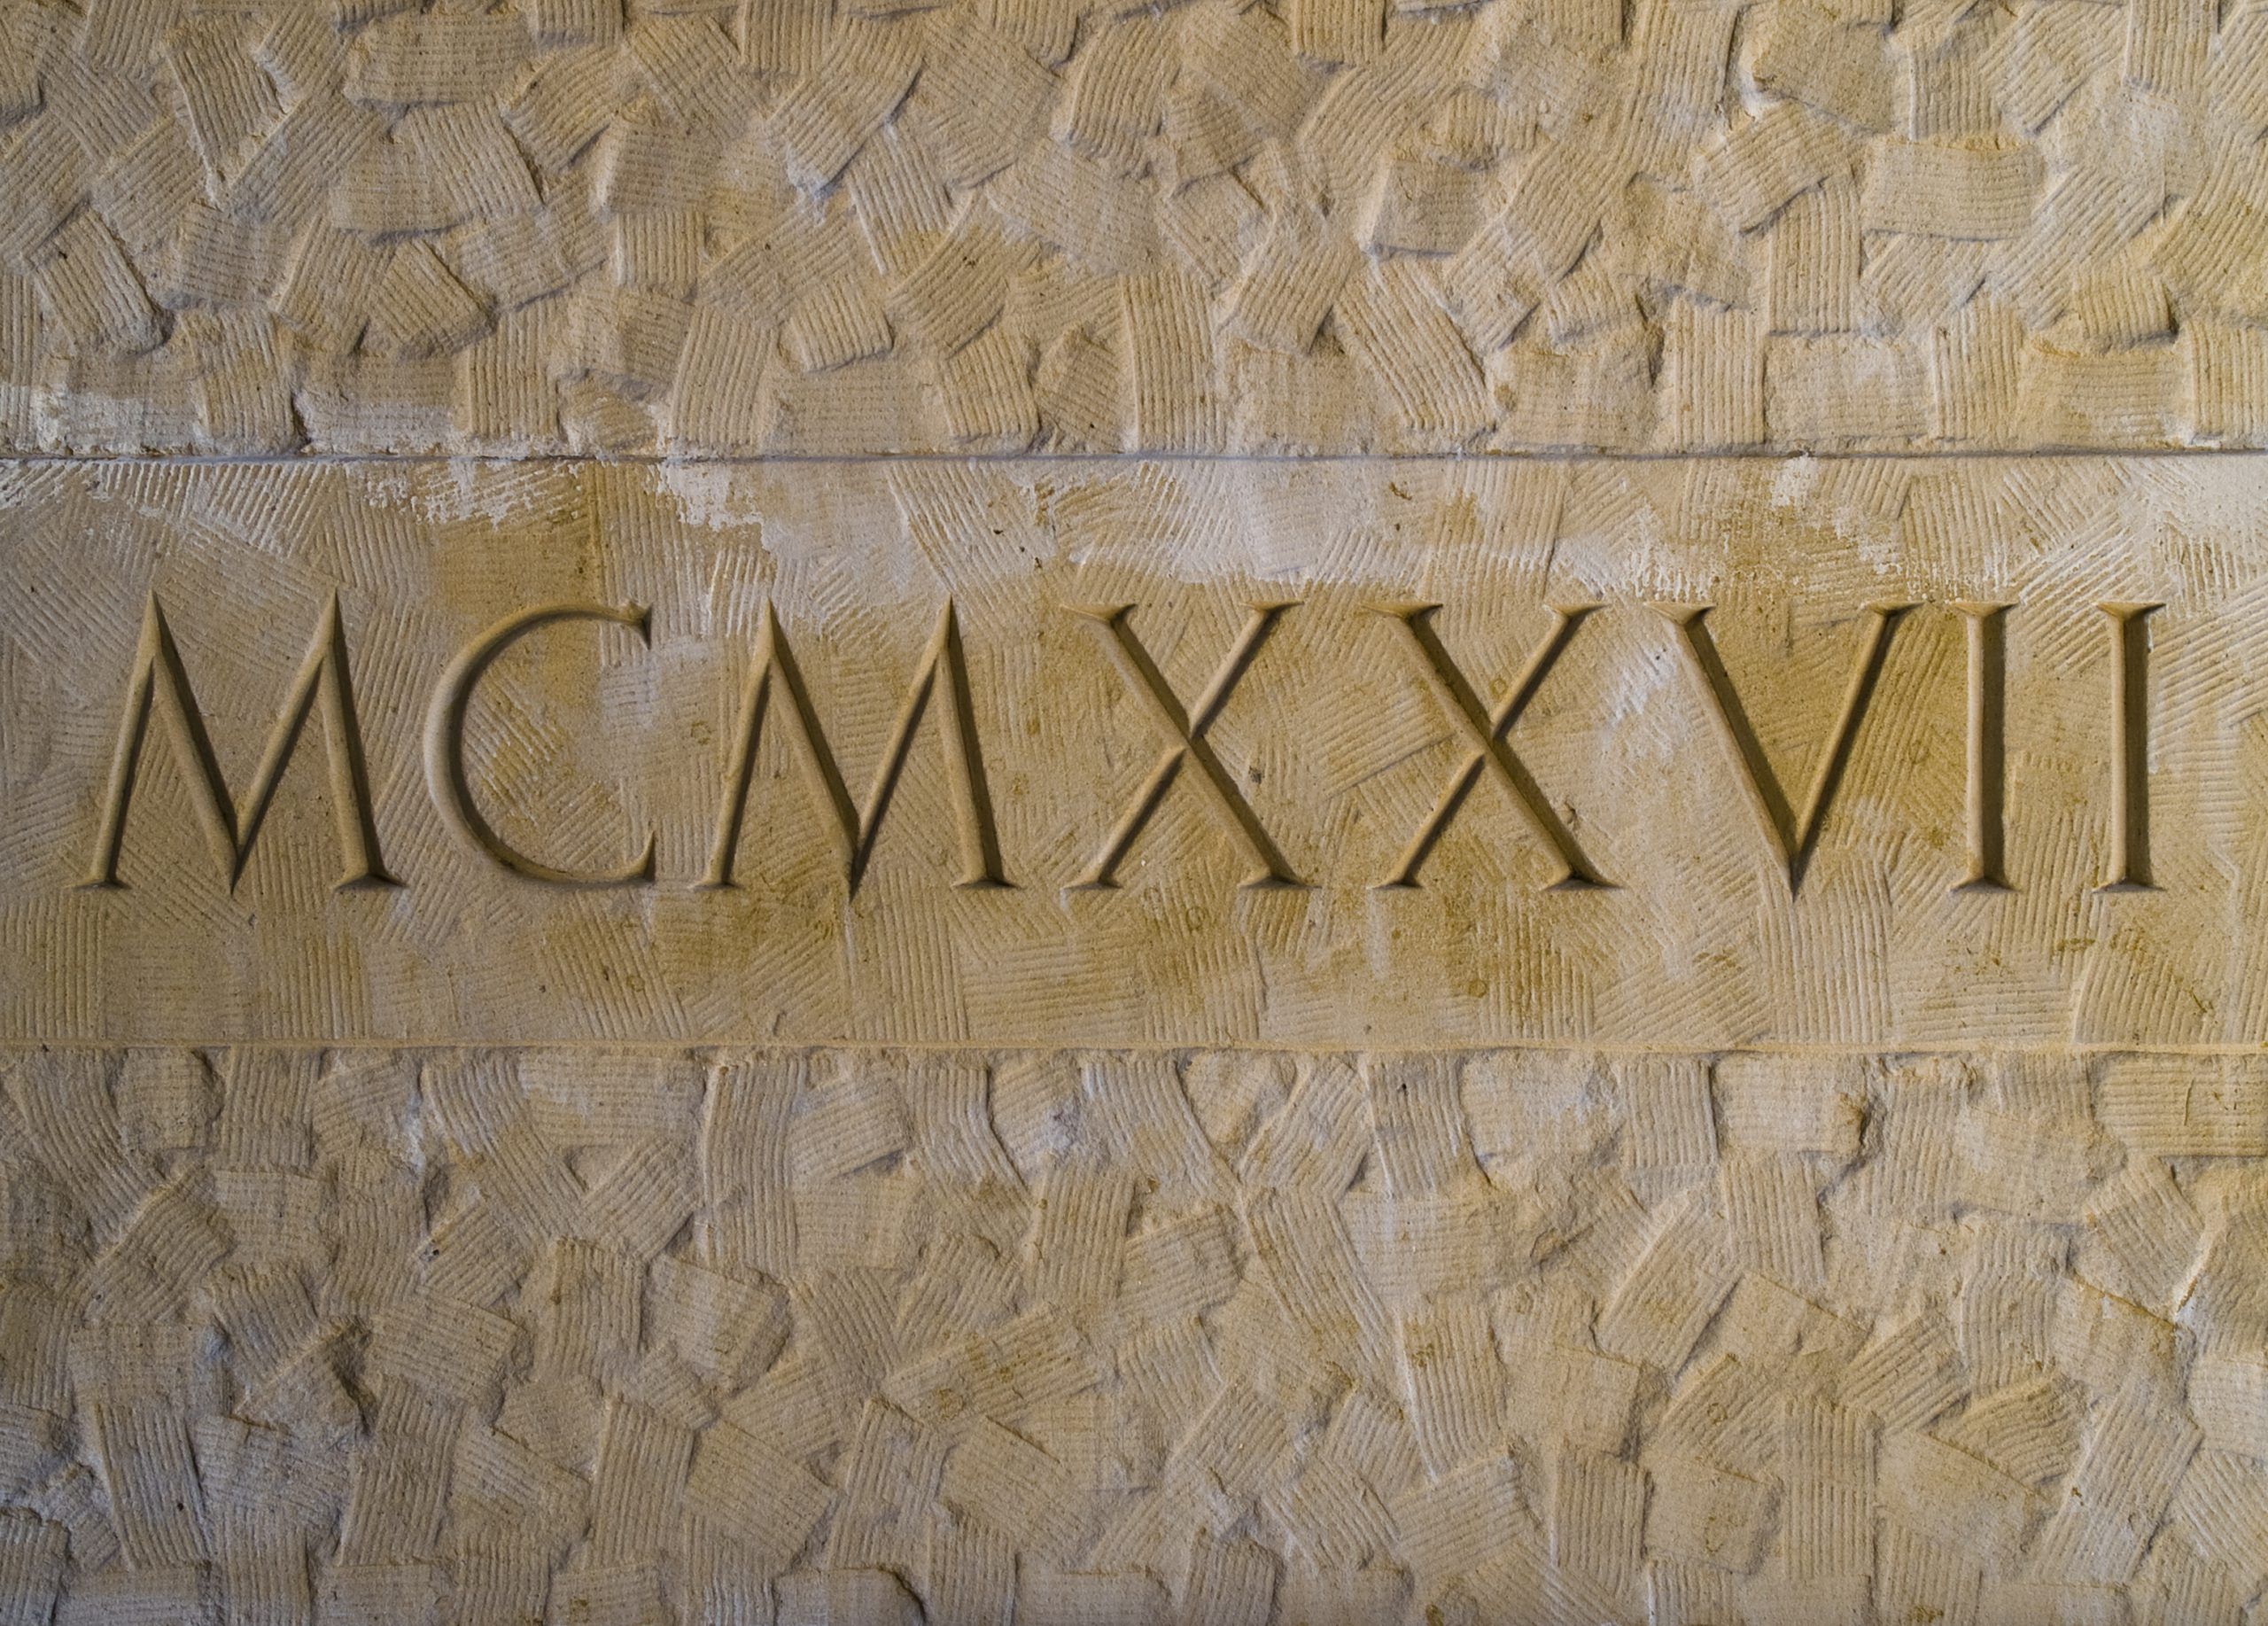 ¿Cómo se representa el número 1 en romano?